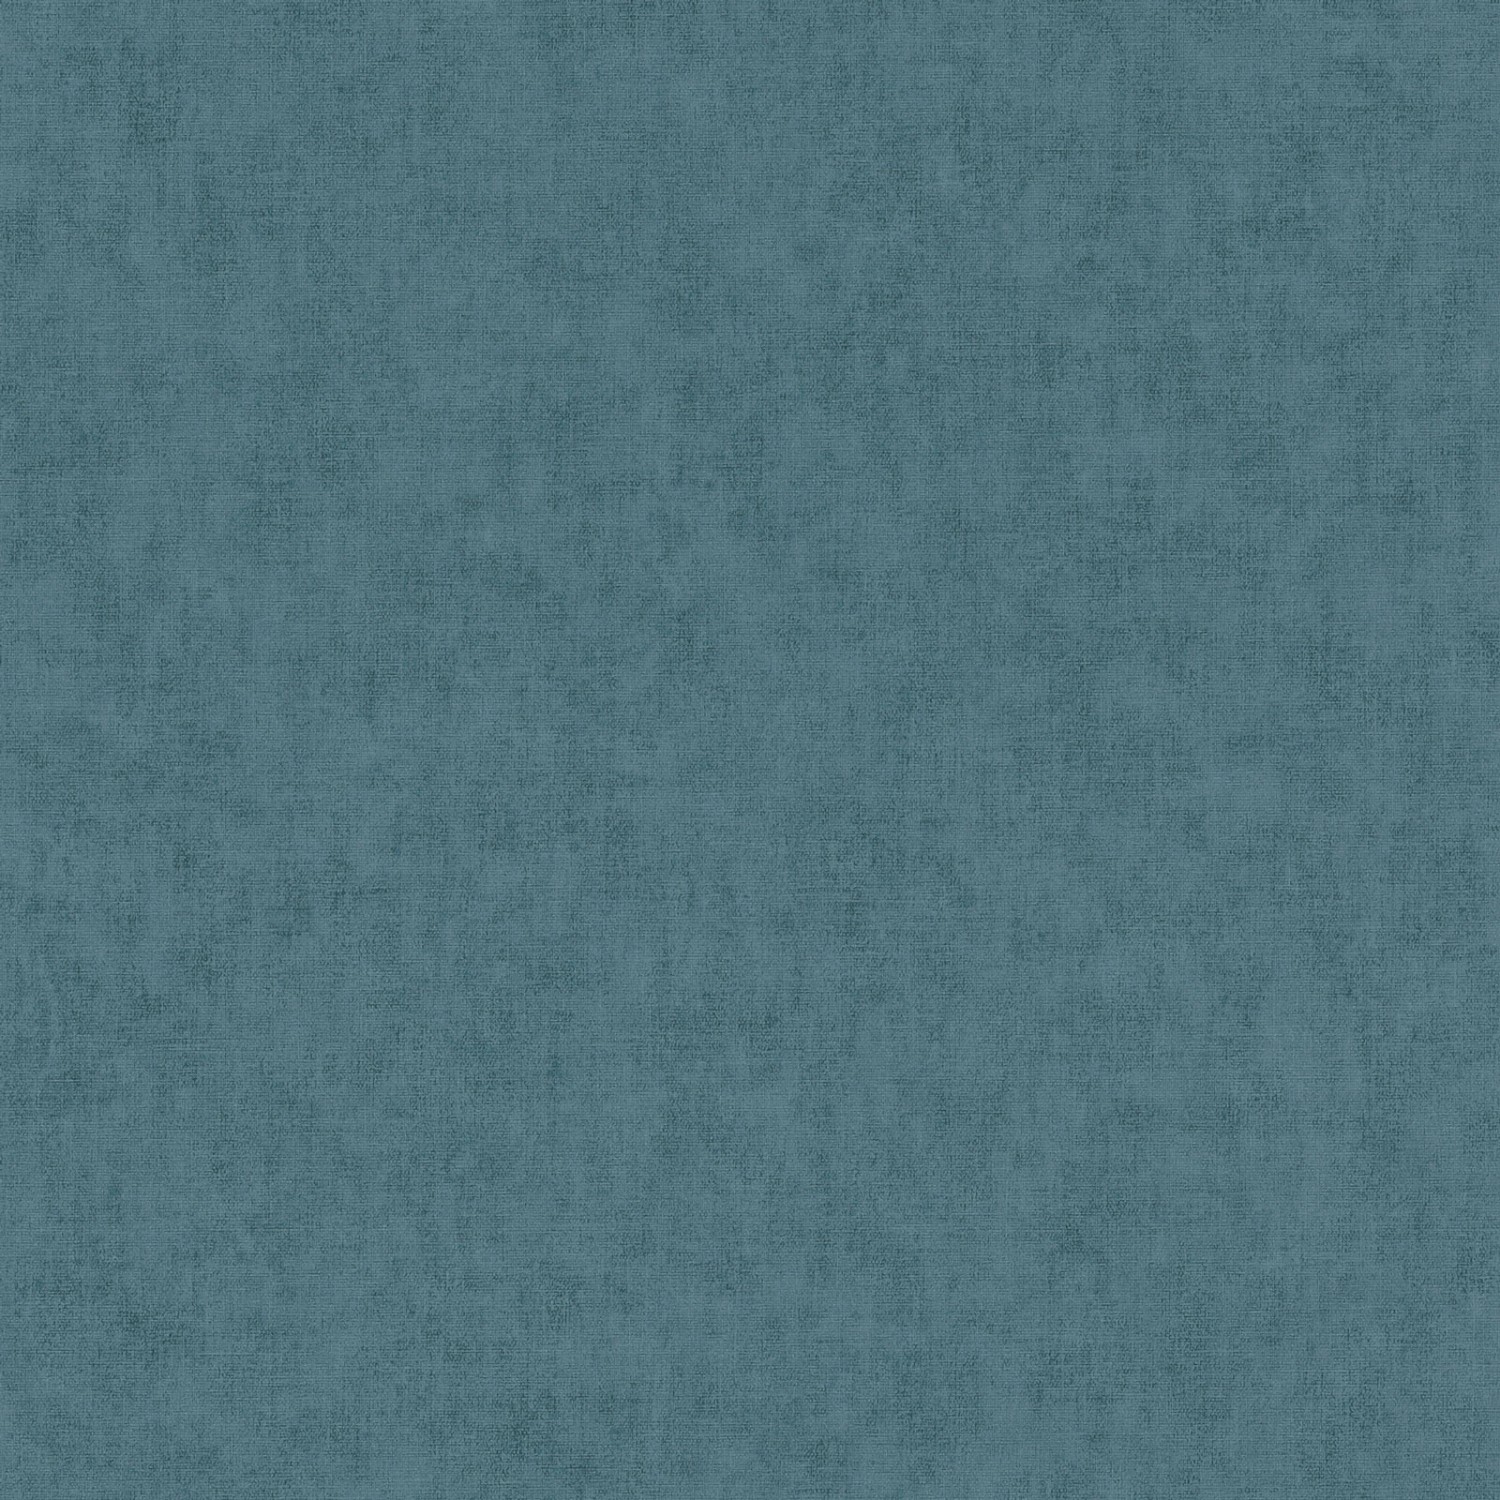 Bricoflor Uni Tapete in Türkis Blau Schlichte Vliestapete mit Vinyl für Bad und Schlafzimmer Einfarbige Putzoptik Tapete im Skandinavischen Stil von Bricoflor